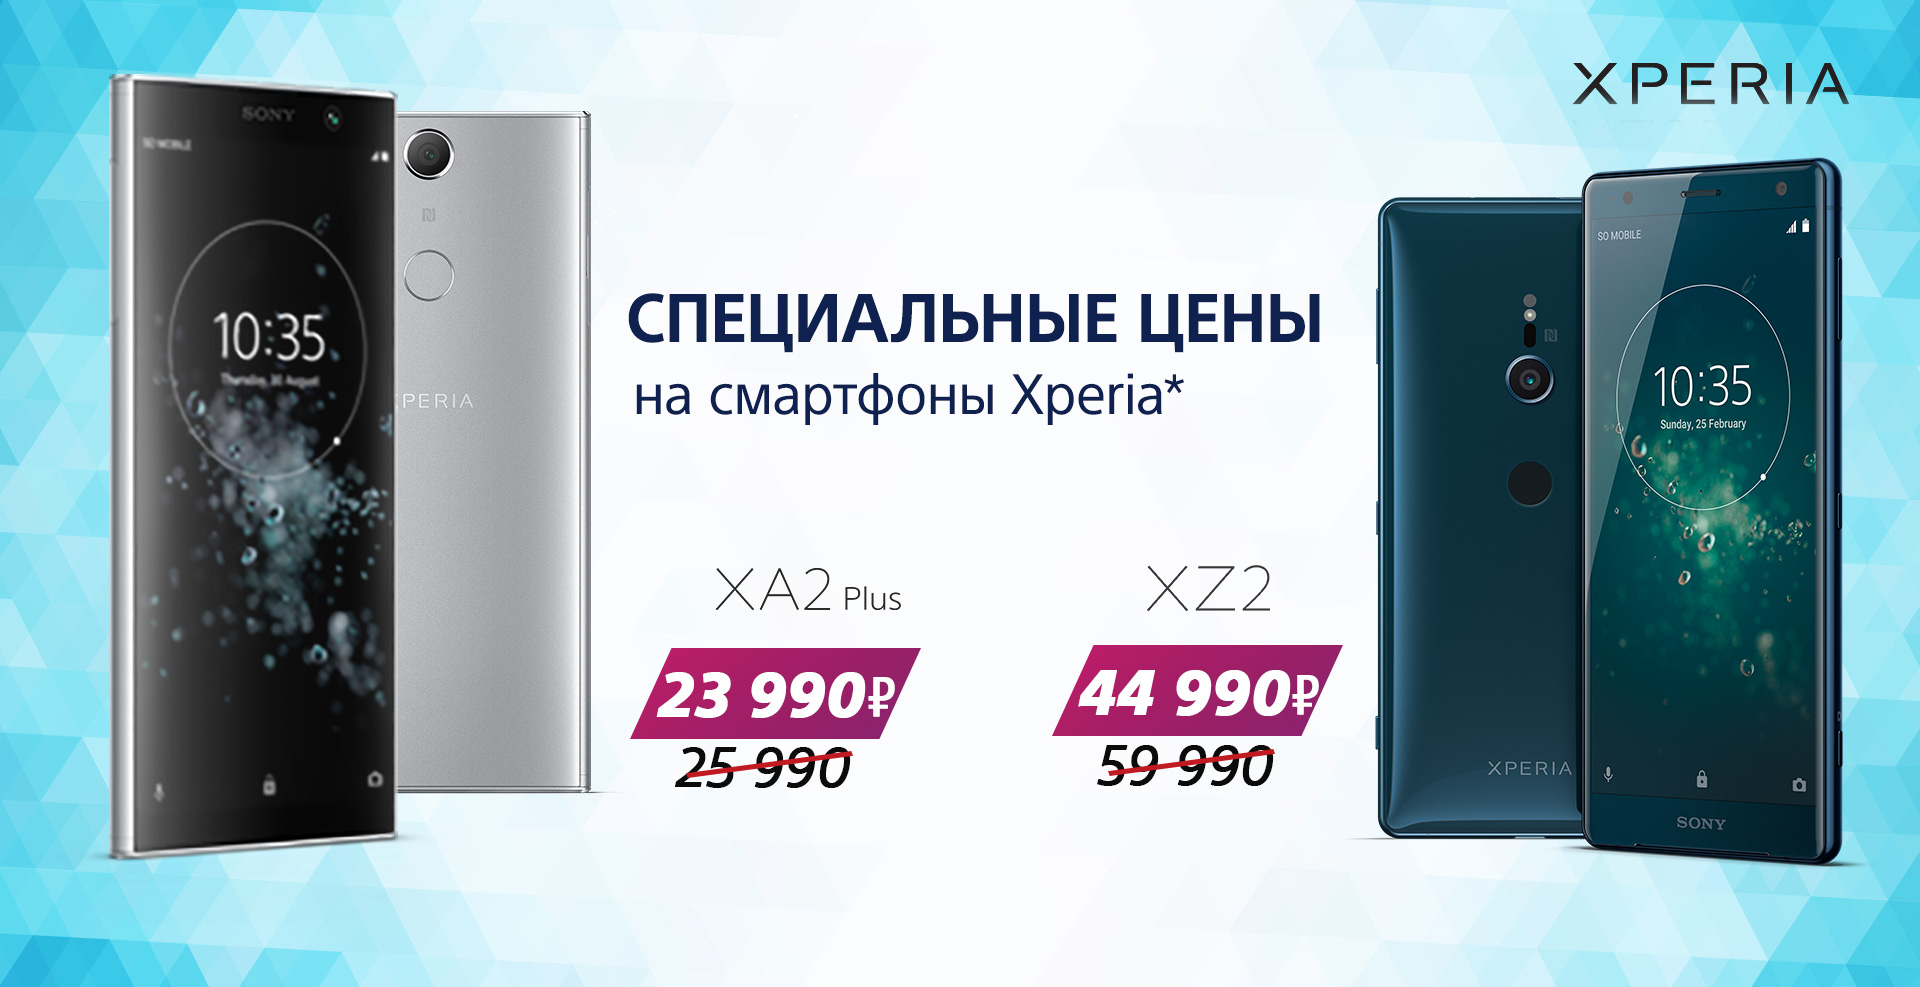 Специальные цены на смартфоны Xperia! 